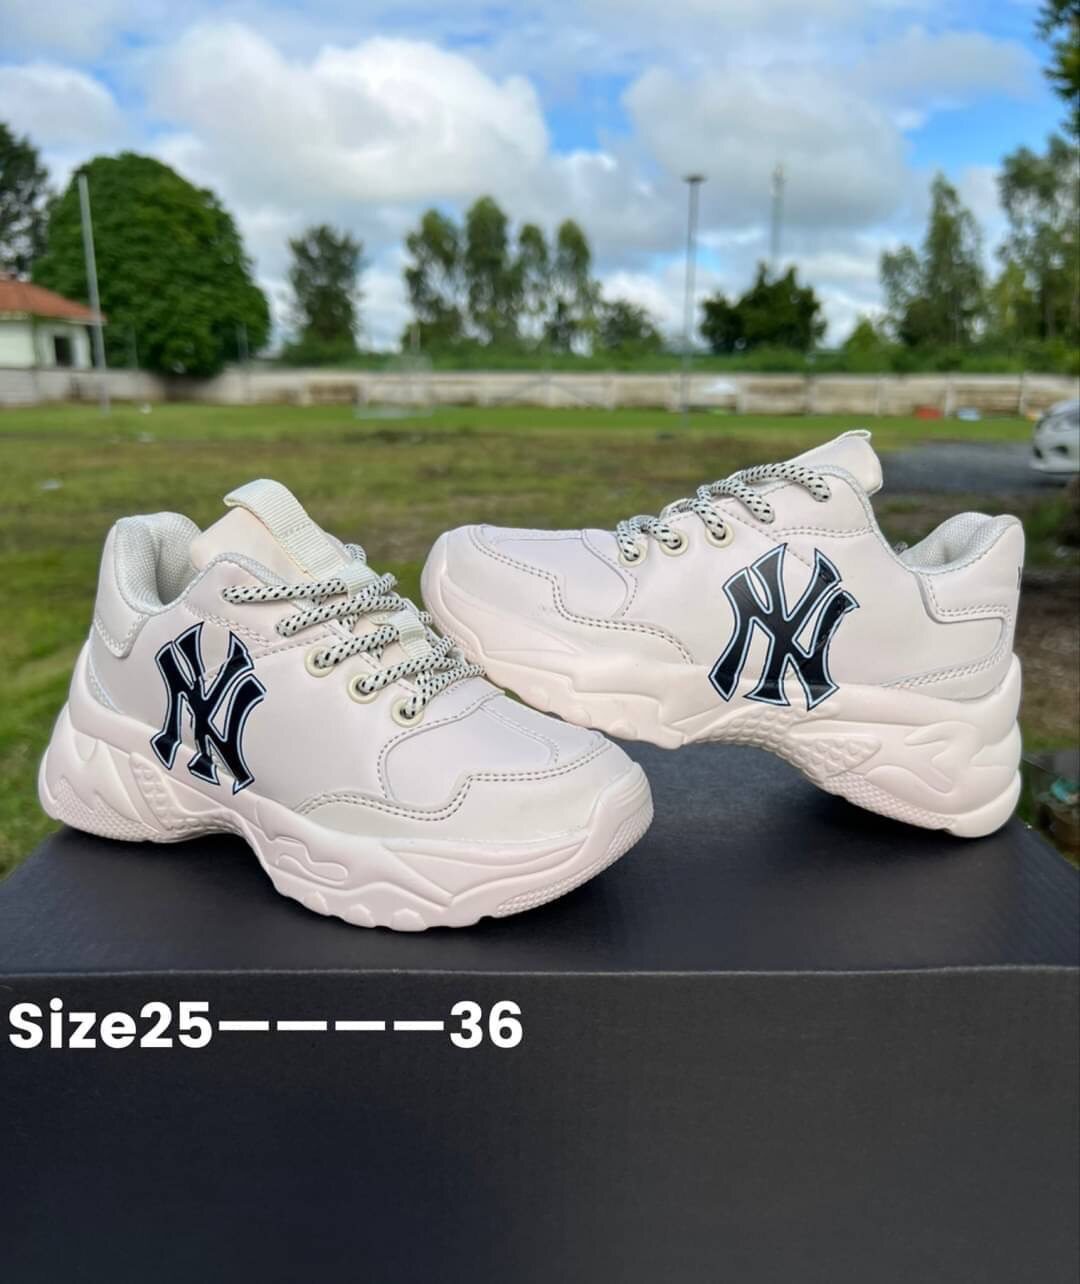 ลองดูภาพสินค้า ML𝐵 𝐵oston NY LA Kids รองเท้าบอสตัน เด็ก ชาย/หญิง color:ขาวดำ size: 25-36